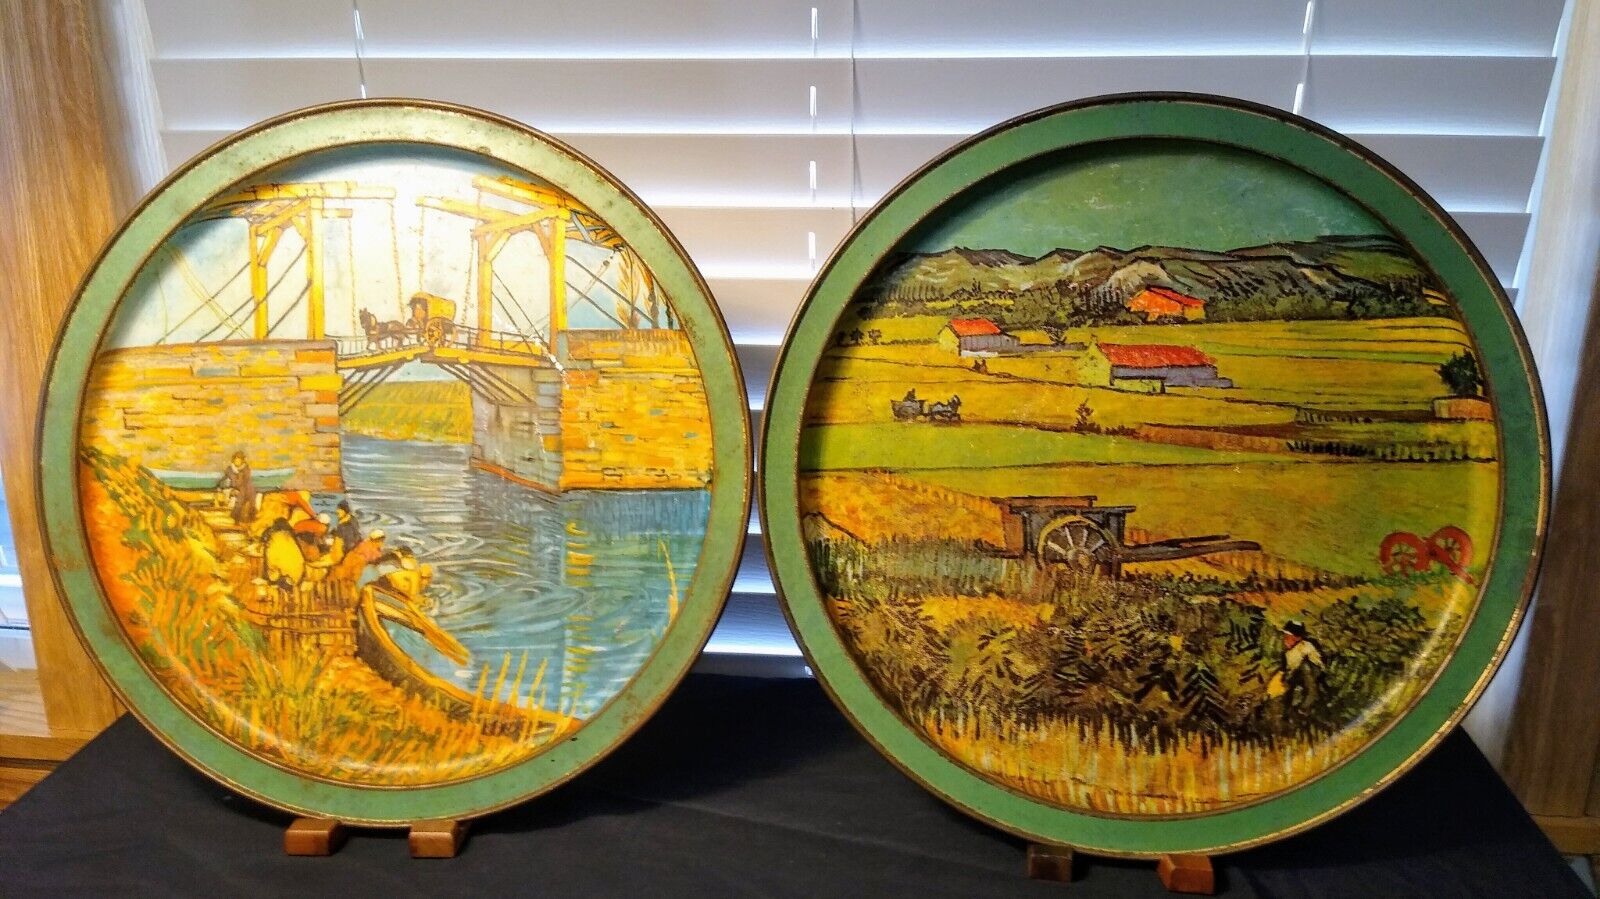 Two Sunshine Biscuit Tin Lids Vincent Van Gogh\'s Art Land & Art Langlois Bridge